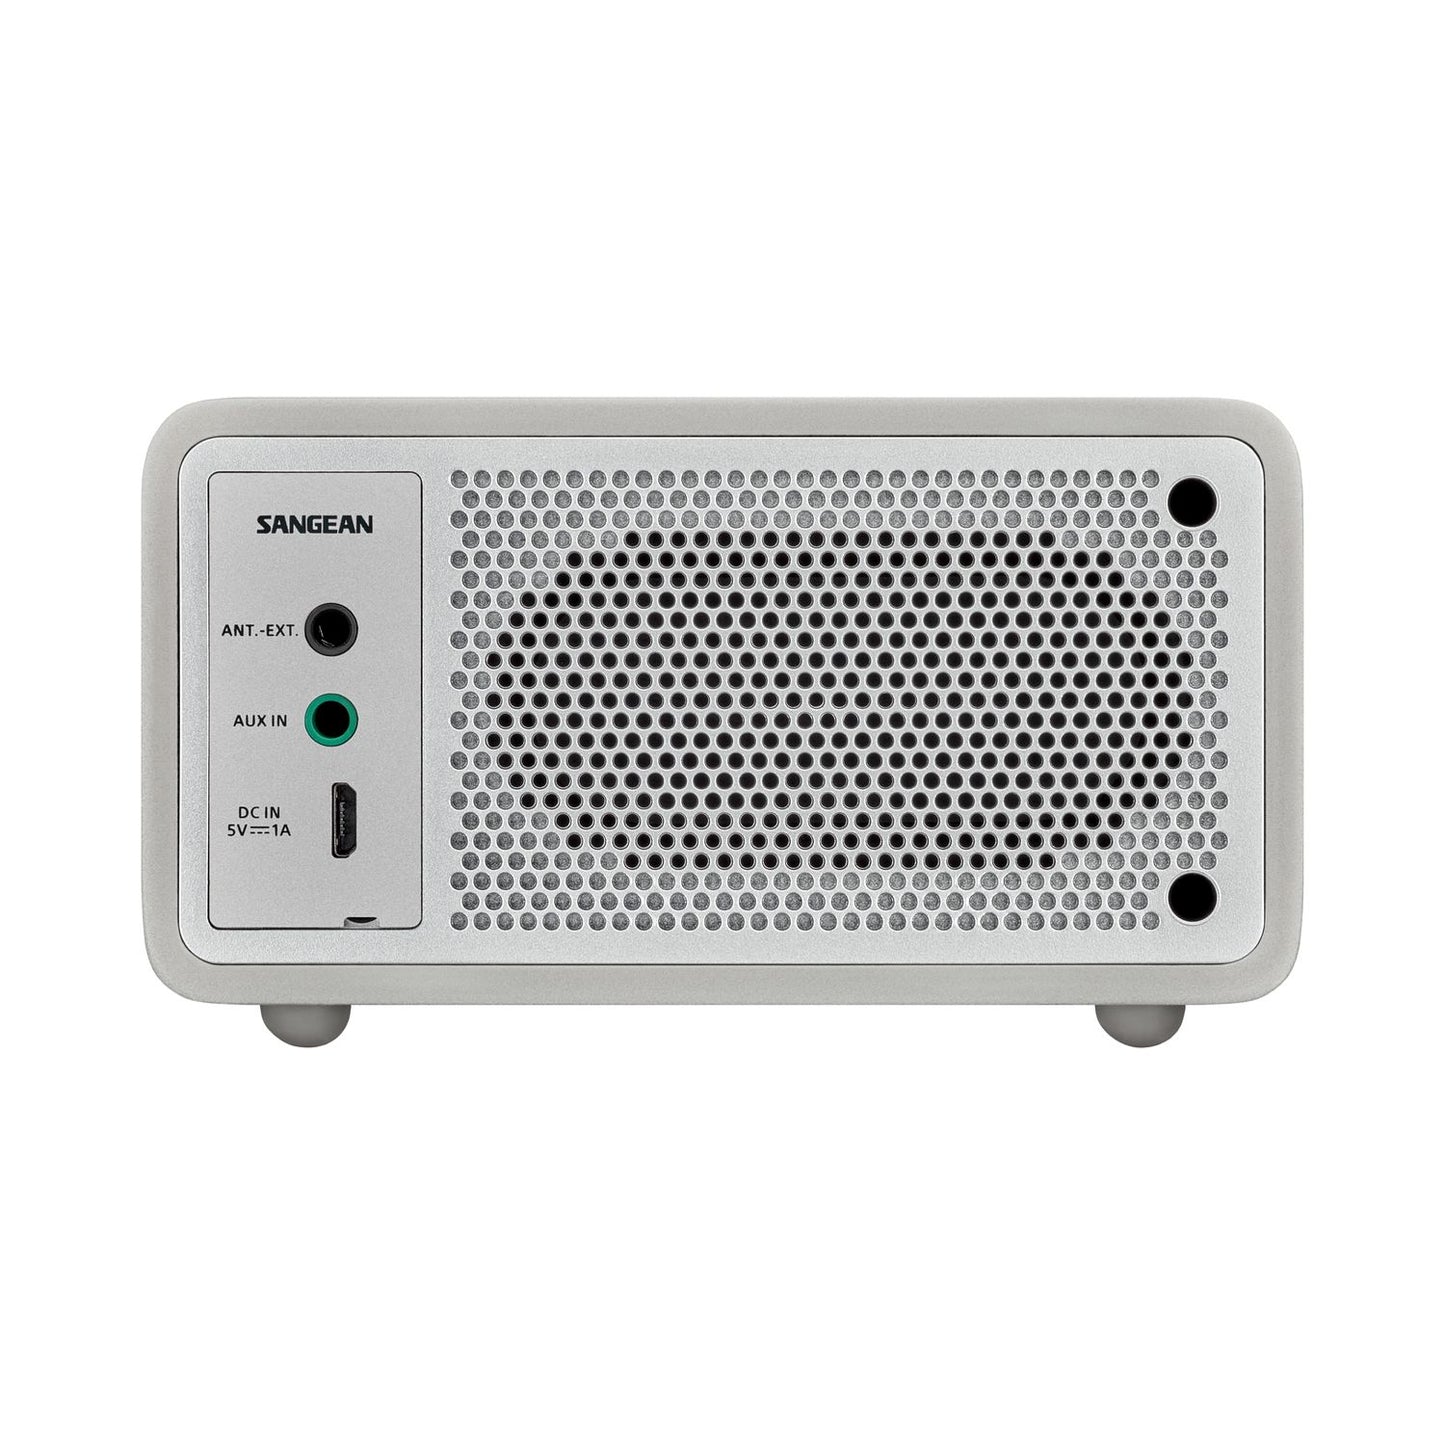 Radio compacte Sangean DDR-7 "Genuine Mini DAB" avec FM, DAB+, Bluetooth, batterie rechargeable